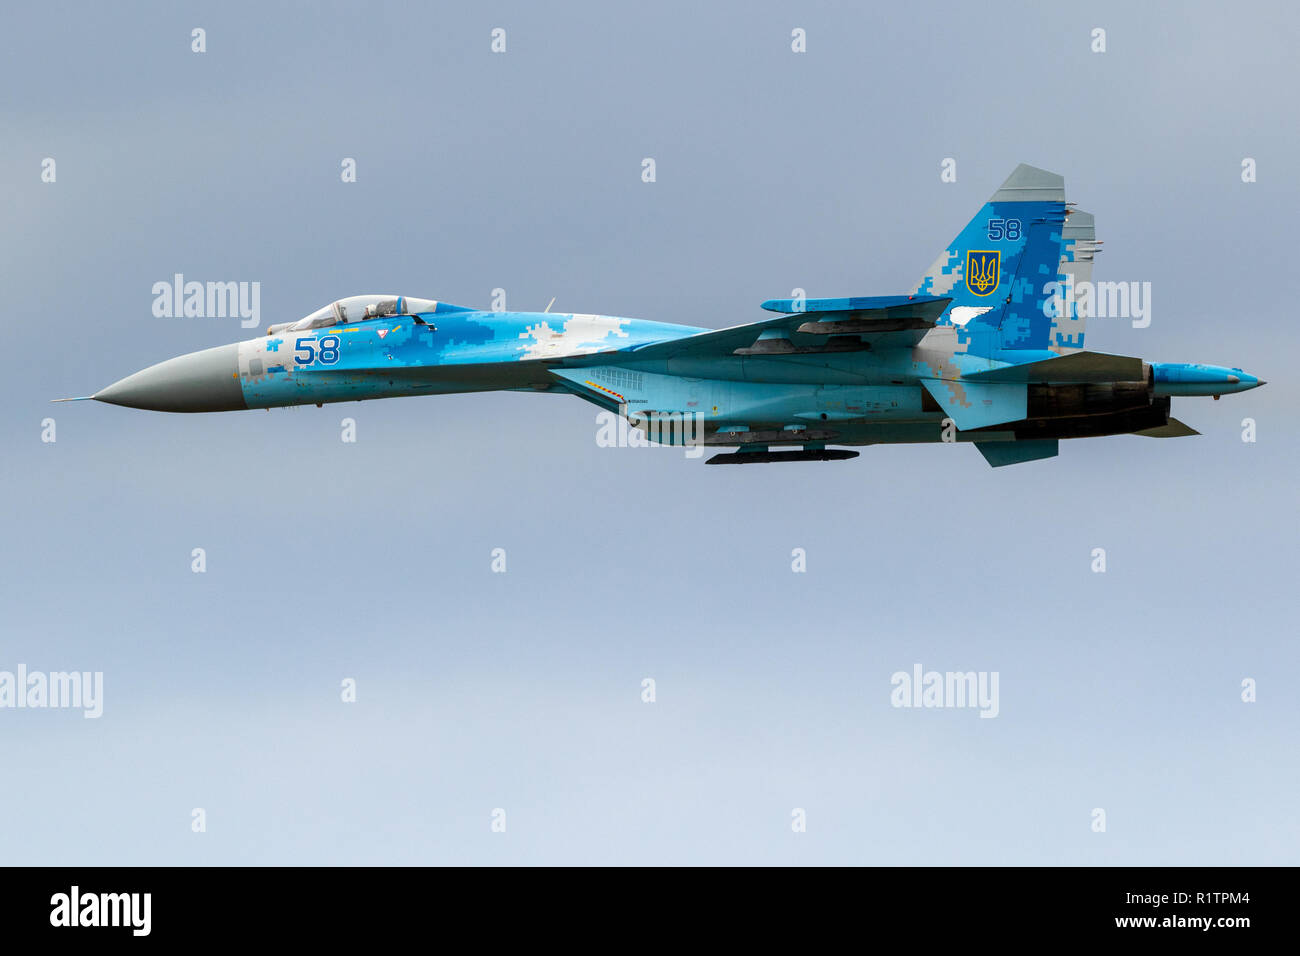 KLEINE BROGEL, BELGIQUE - SEP 8, 2018 : l'Armée de l'air ukrainienne Sukhoi Su-27 FLANKER fighter jet avion en vol sur la base aérienne d'Oostende. Banque D'Images